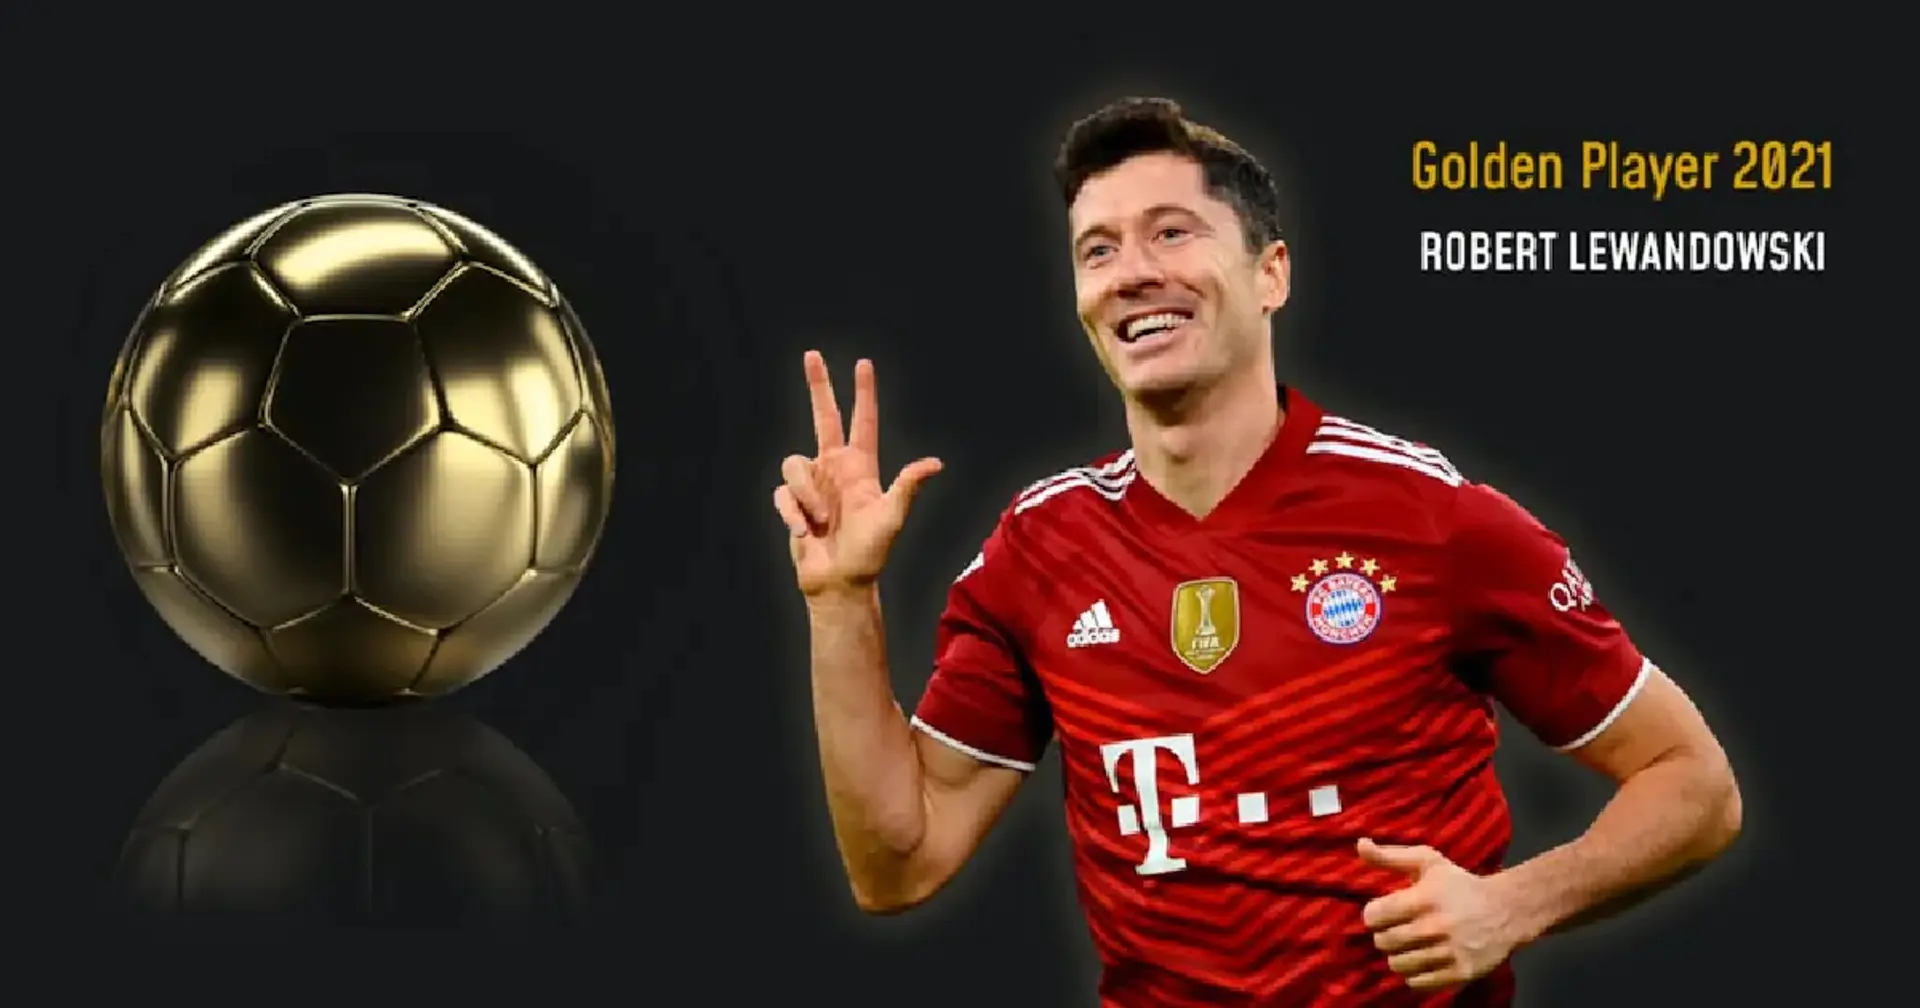 Robert Lewandowski wins prestigious 2021 Golden Player award